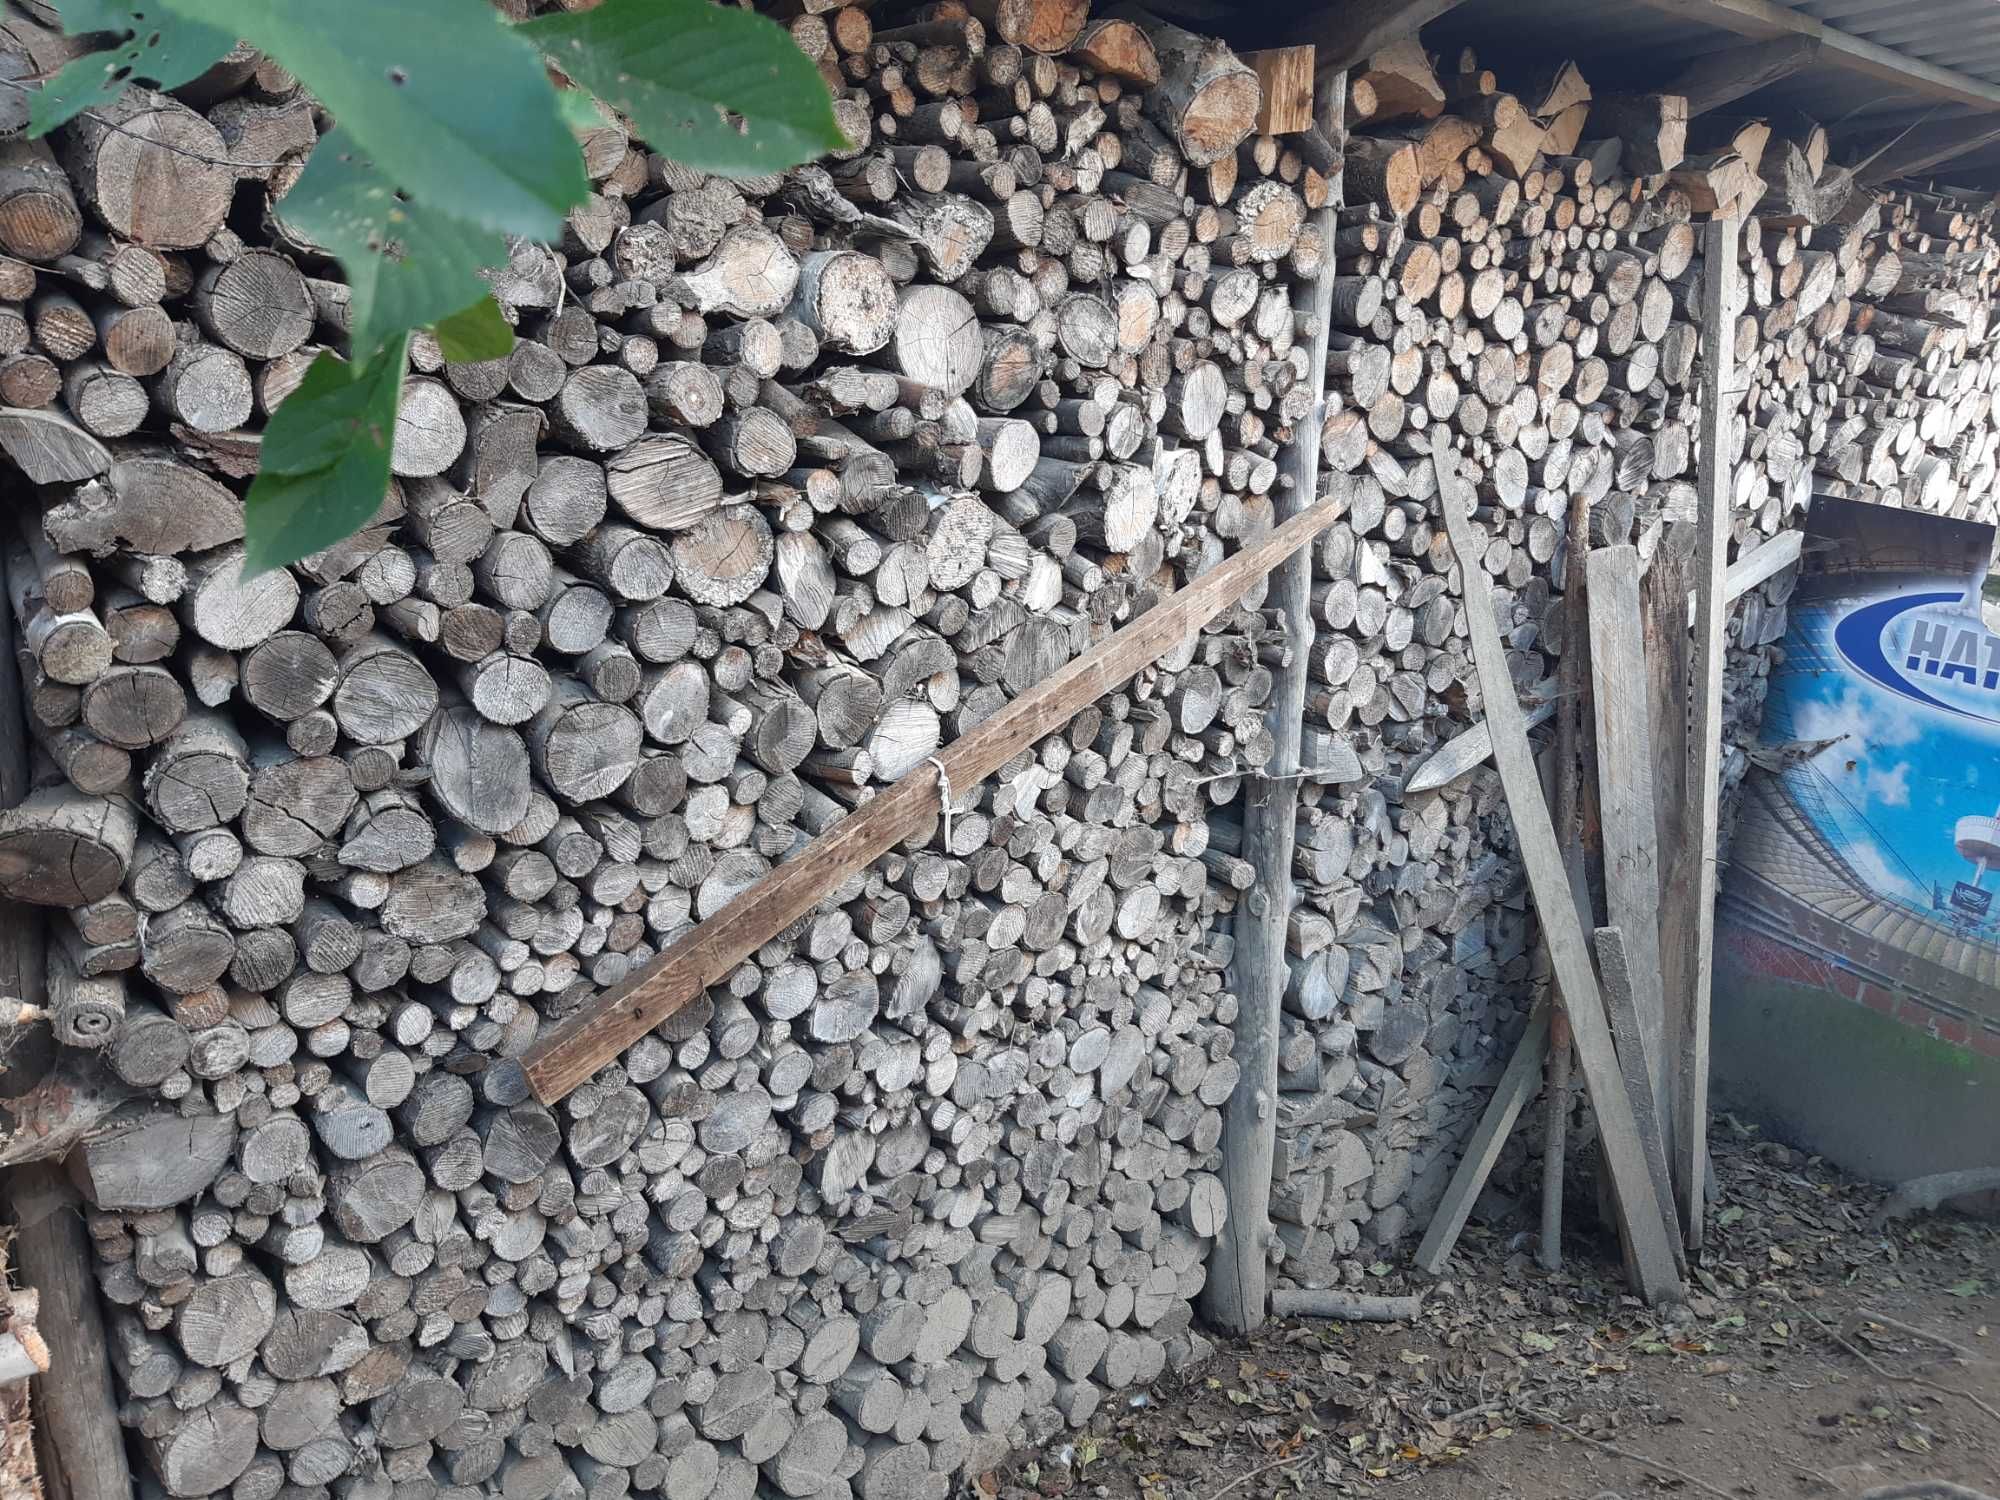 Suche pociete drewno opałowe rozne gatunki - cena za ułożone drewno !